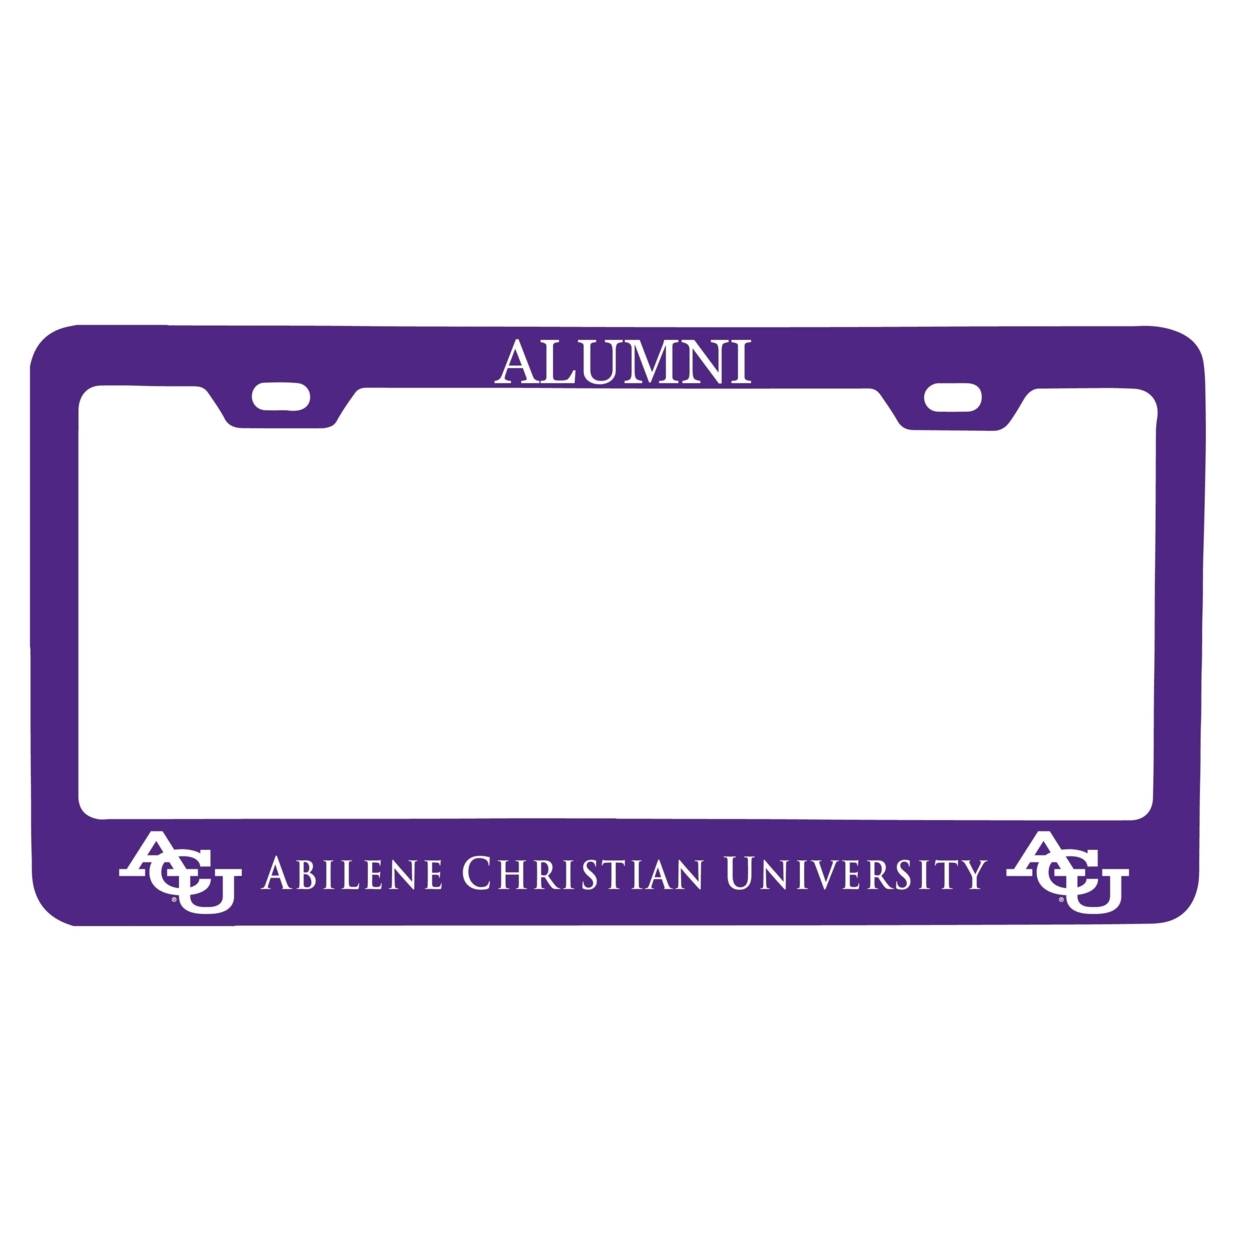 Abilene Christian University Alumni License Plate Frame